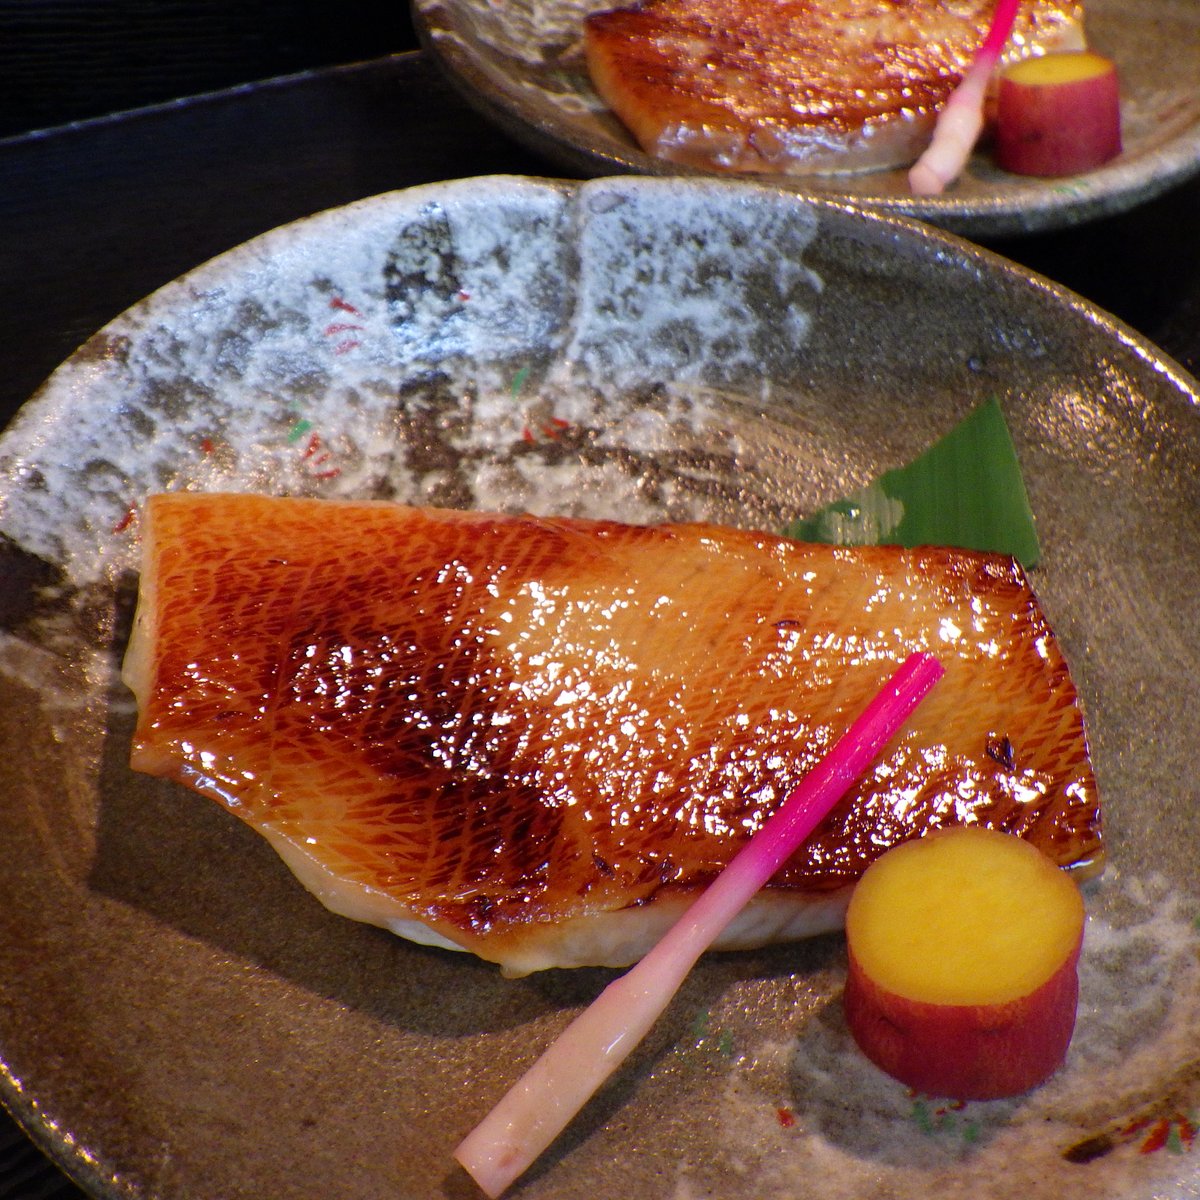 今夜の西京焼は、鰤
#西京焼き #ブリ

😋🐟😋🐟😋🐟😋🐟😋🐟😋🐟😋🐟😋

Grilled yellow tail marinated in Kyoto style miso for tonight's kaiseki course
#japaneserestaurant #englishavailable